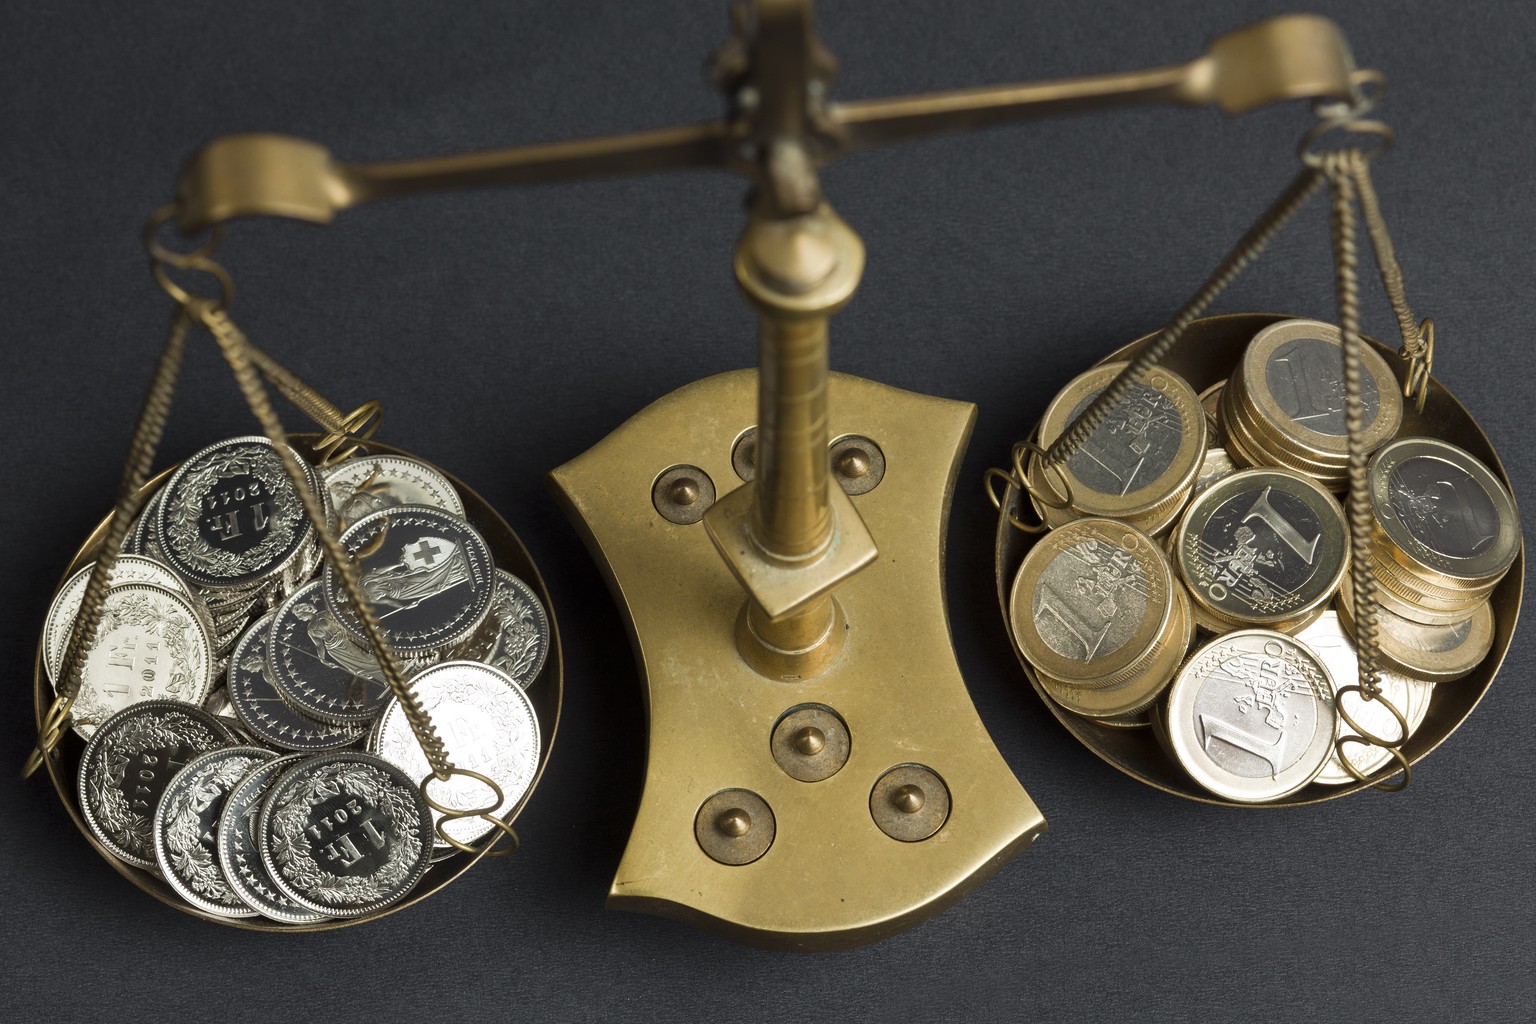 ARCHIVBILD - EURO UEBERSCHREITET ZUM ERSTEN MAL SEIT JANUAR 2015 DIE MARKE VON 1,15 FRANKEN - A pair of balances filled with coins of 1 Swiss Franc (left) and coins of 1 Euro (right), pictured on July ...